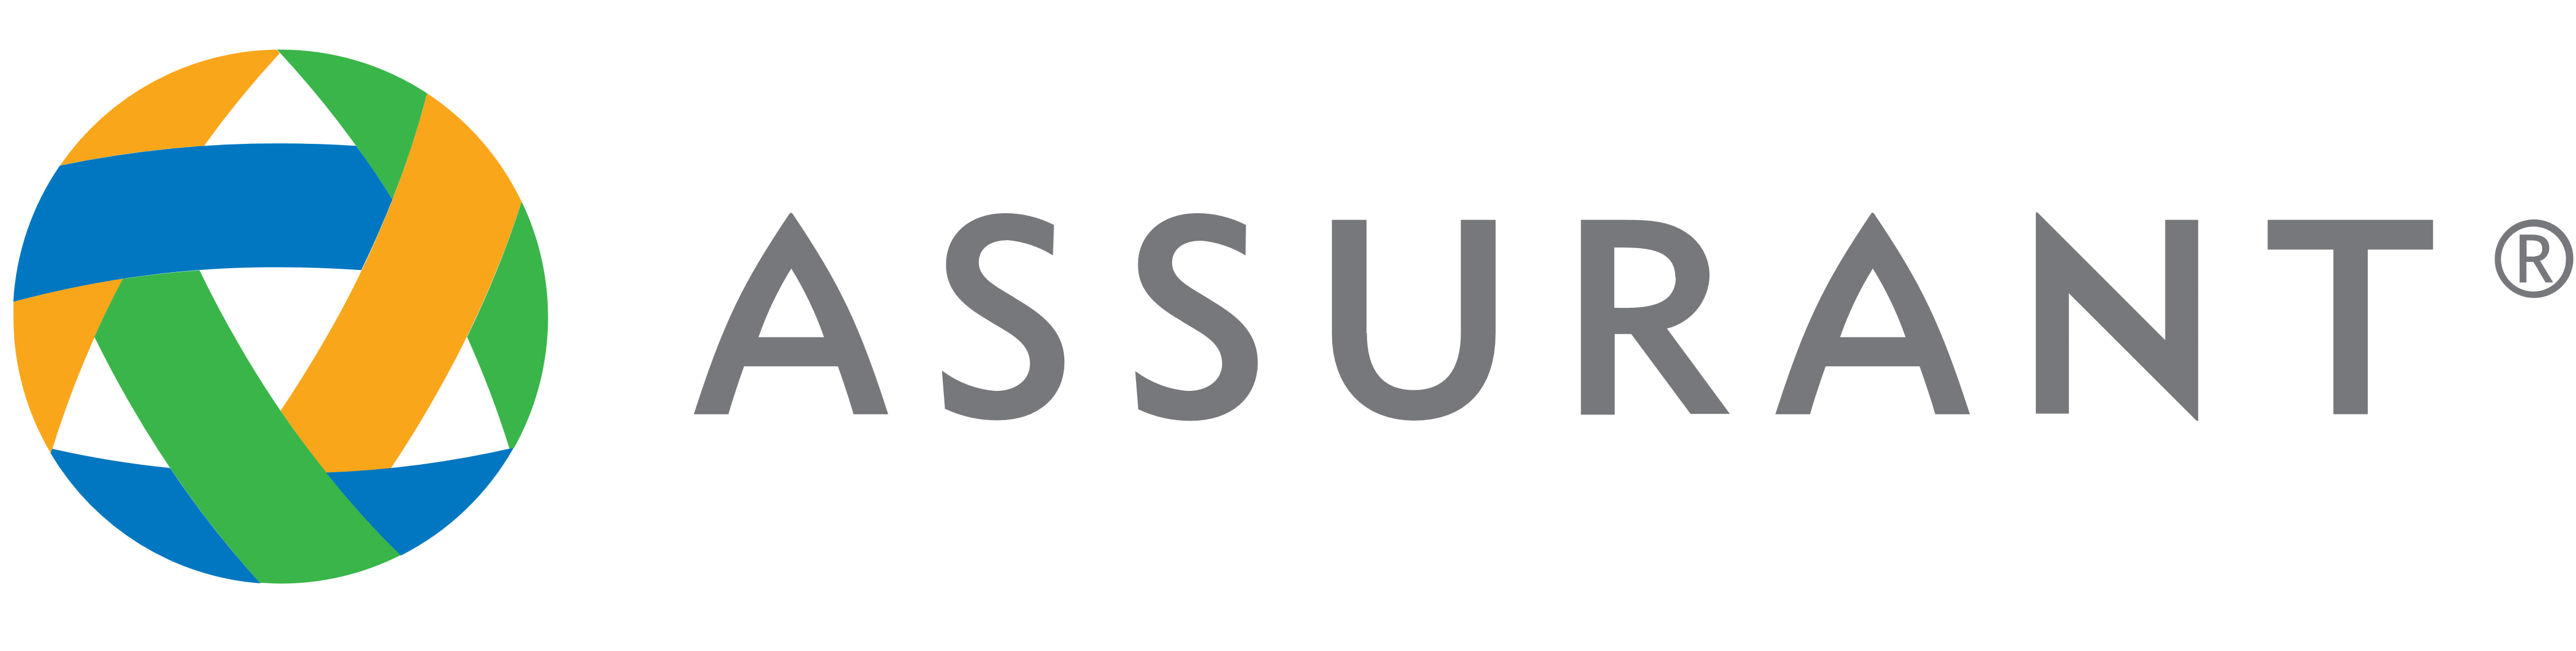 Assurant 安信龙集团 Logo设计